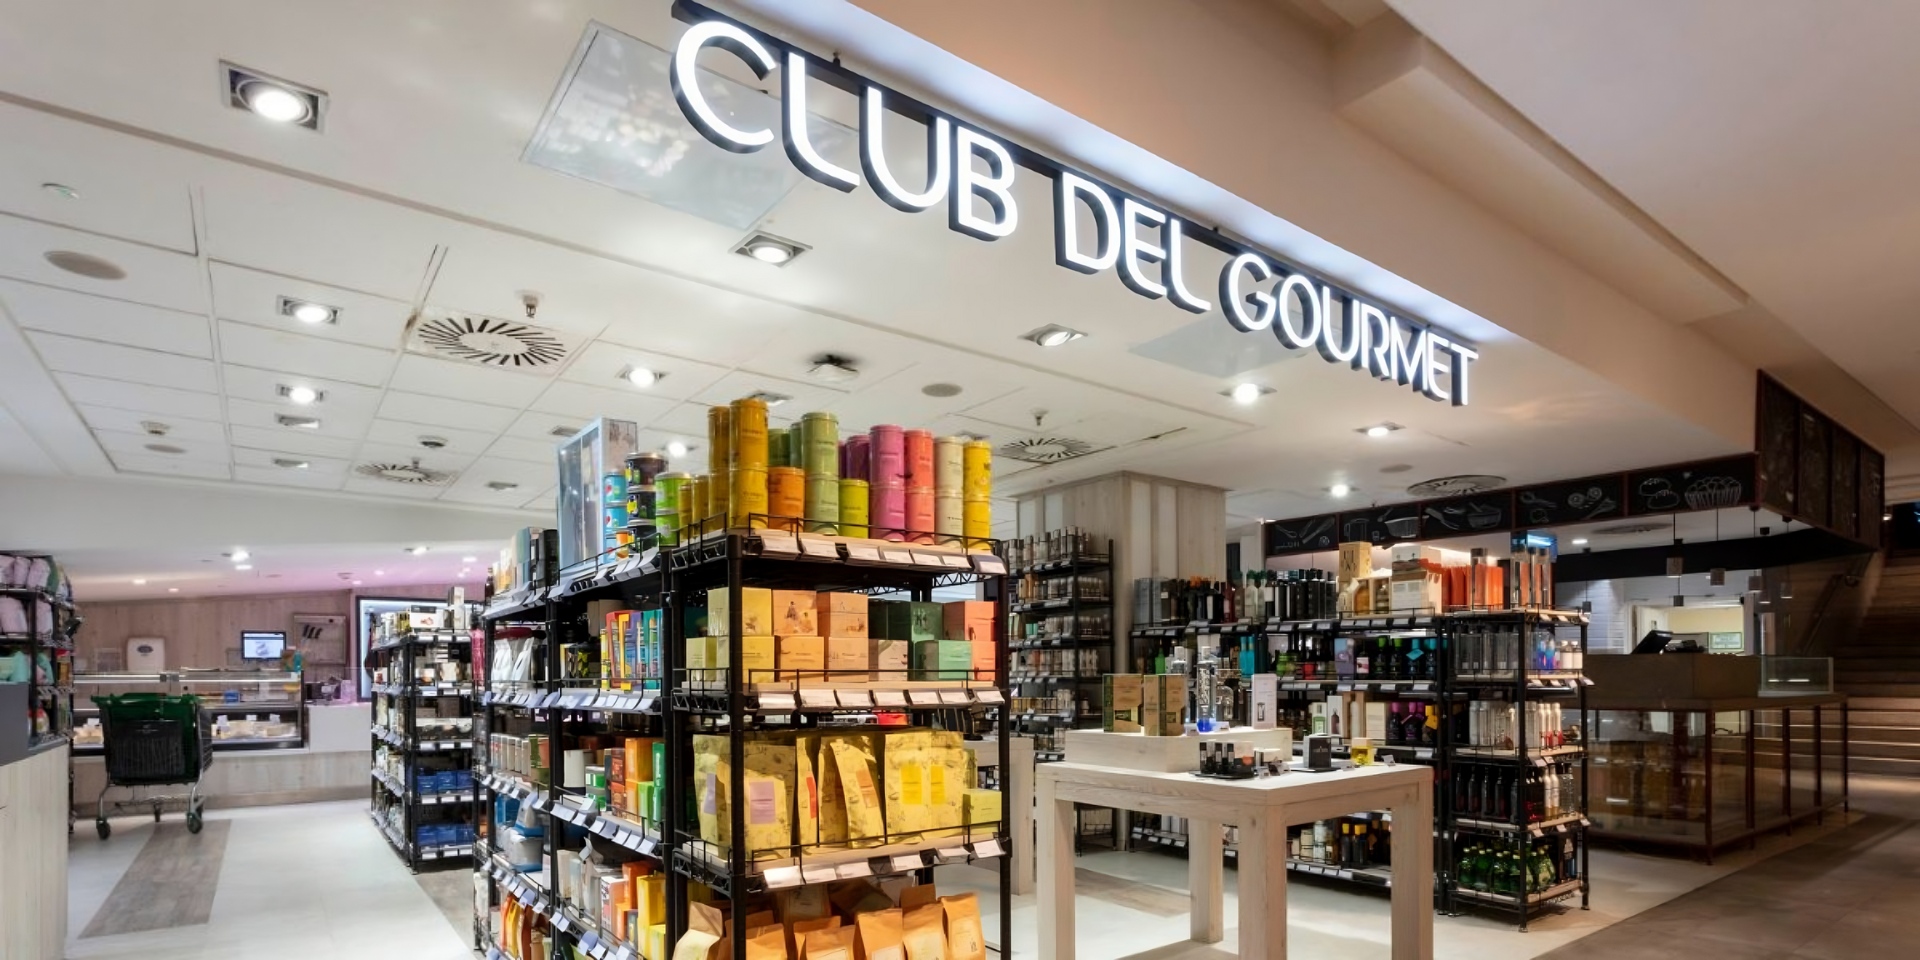 Club del Gourmet